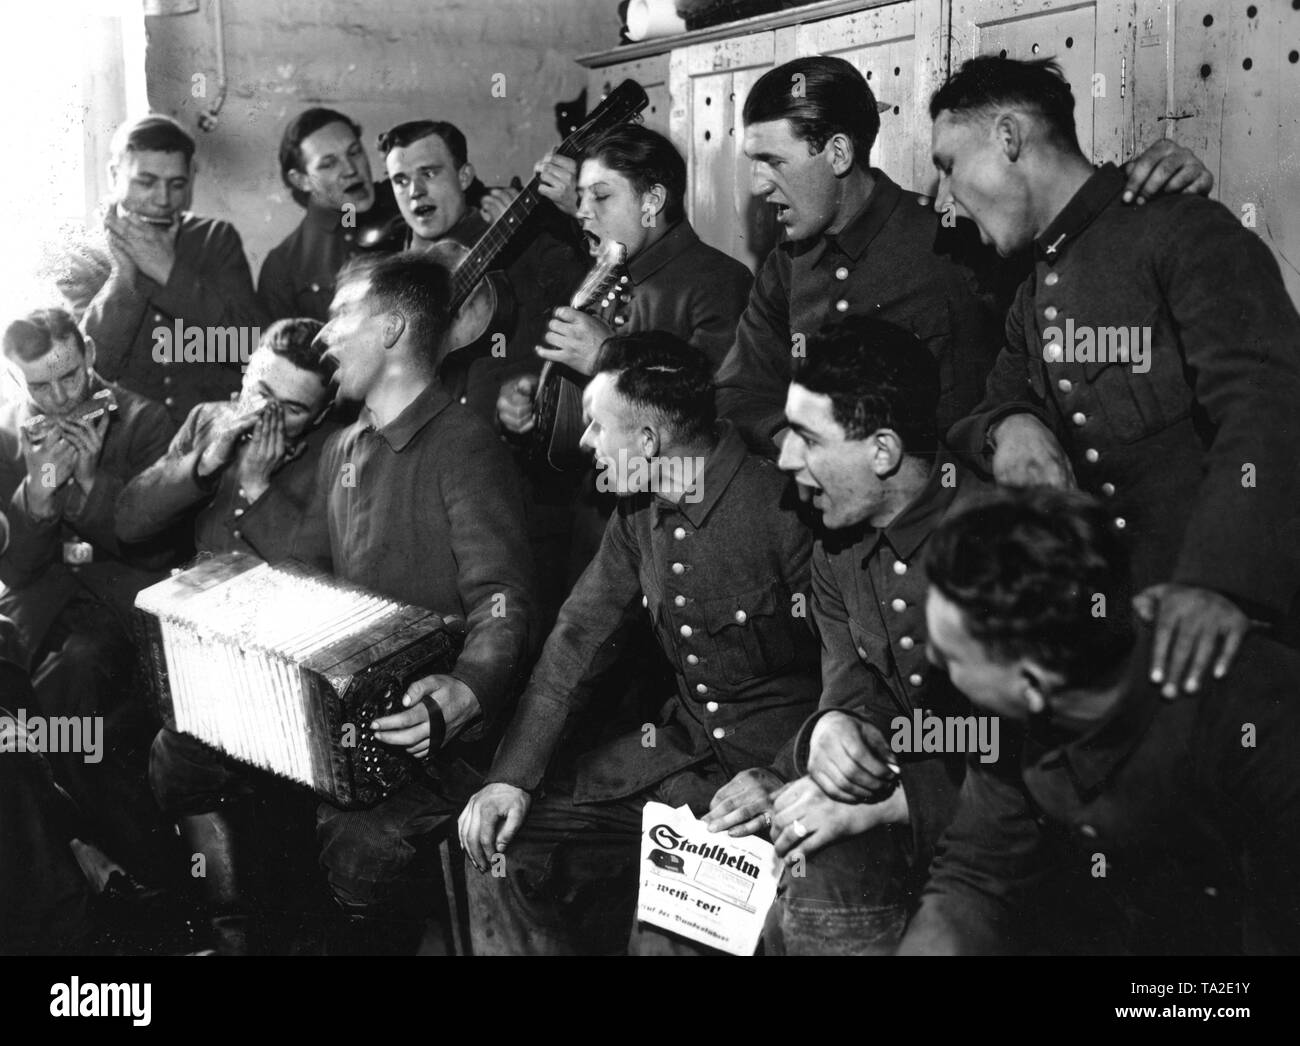 Les hommes du travail bénévole Service du Stahlhelm, c'est chanter et jouer de la musique après le travail fait sans doute pour le nouveau Reichsforschungsiedlung Haselhorst à Berlin. Banque D'Images